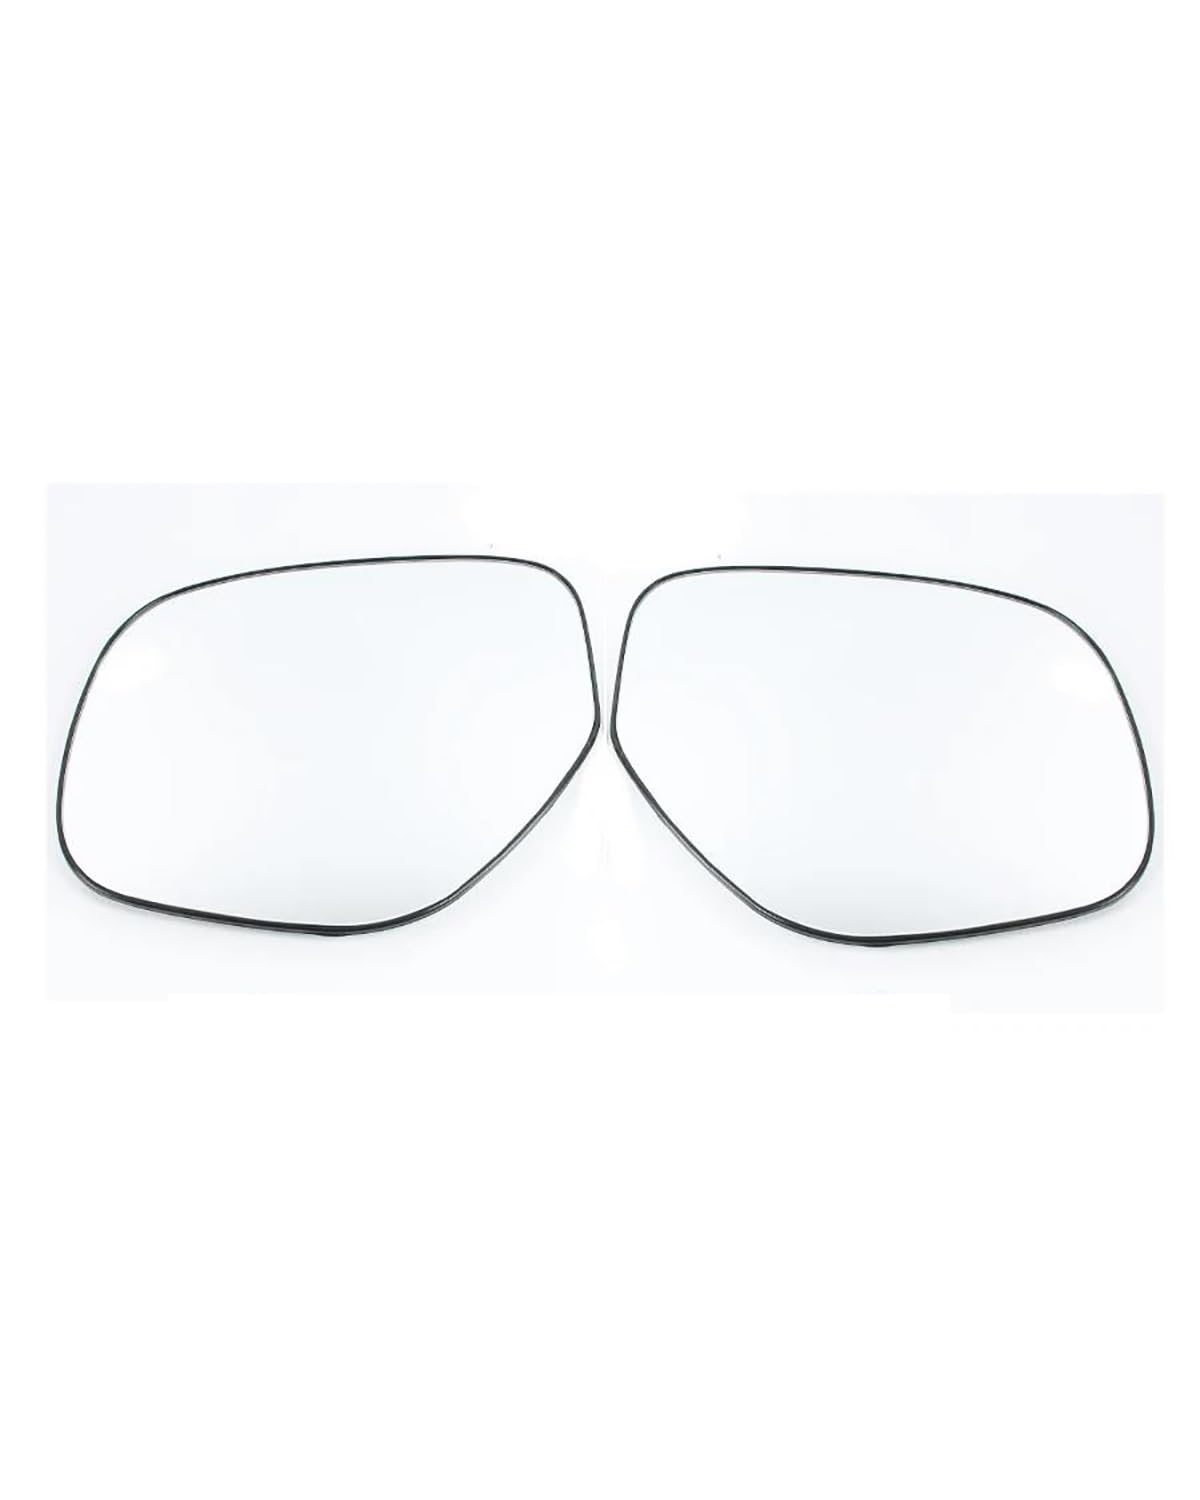 Außenspiegel Gla Für Mitsubishies Strength Dazzle ASX 2013-2021 Autozubehör Rückspiegellinsen Außenseite Reflektierende Glaslinse Umkehrlinse Rückfahrglas Spiegel(A pair no heating) von ZJSSJZ